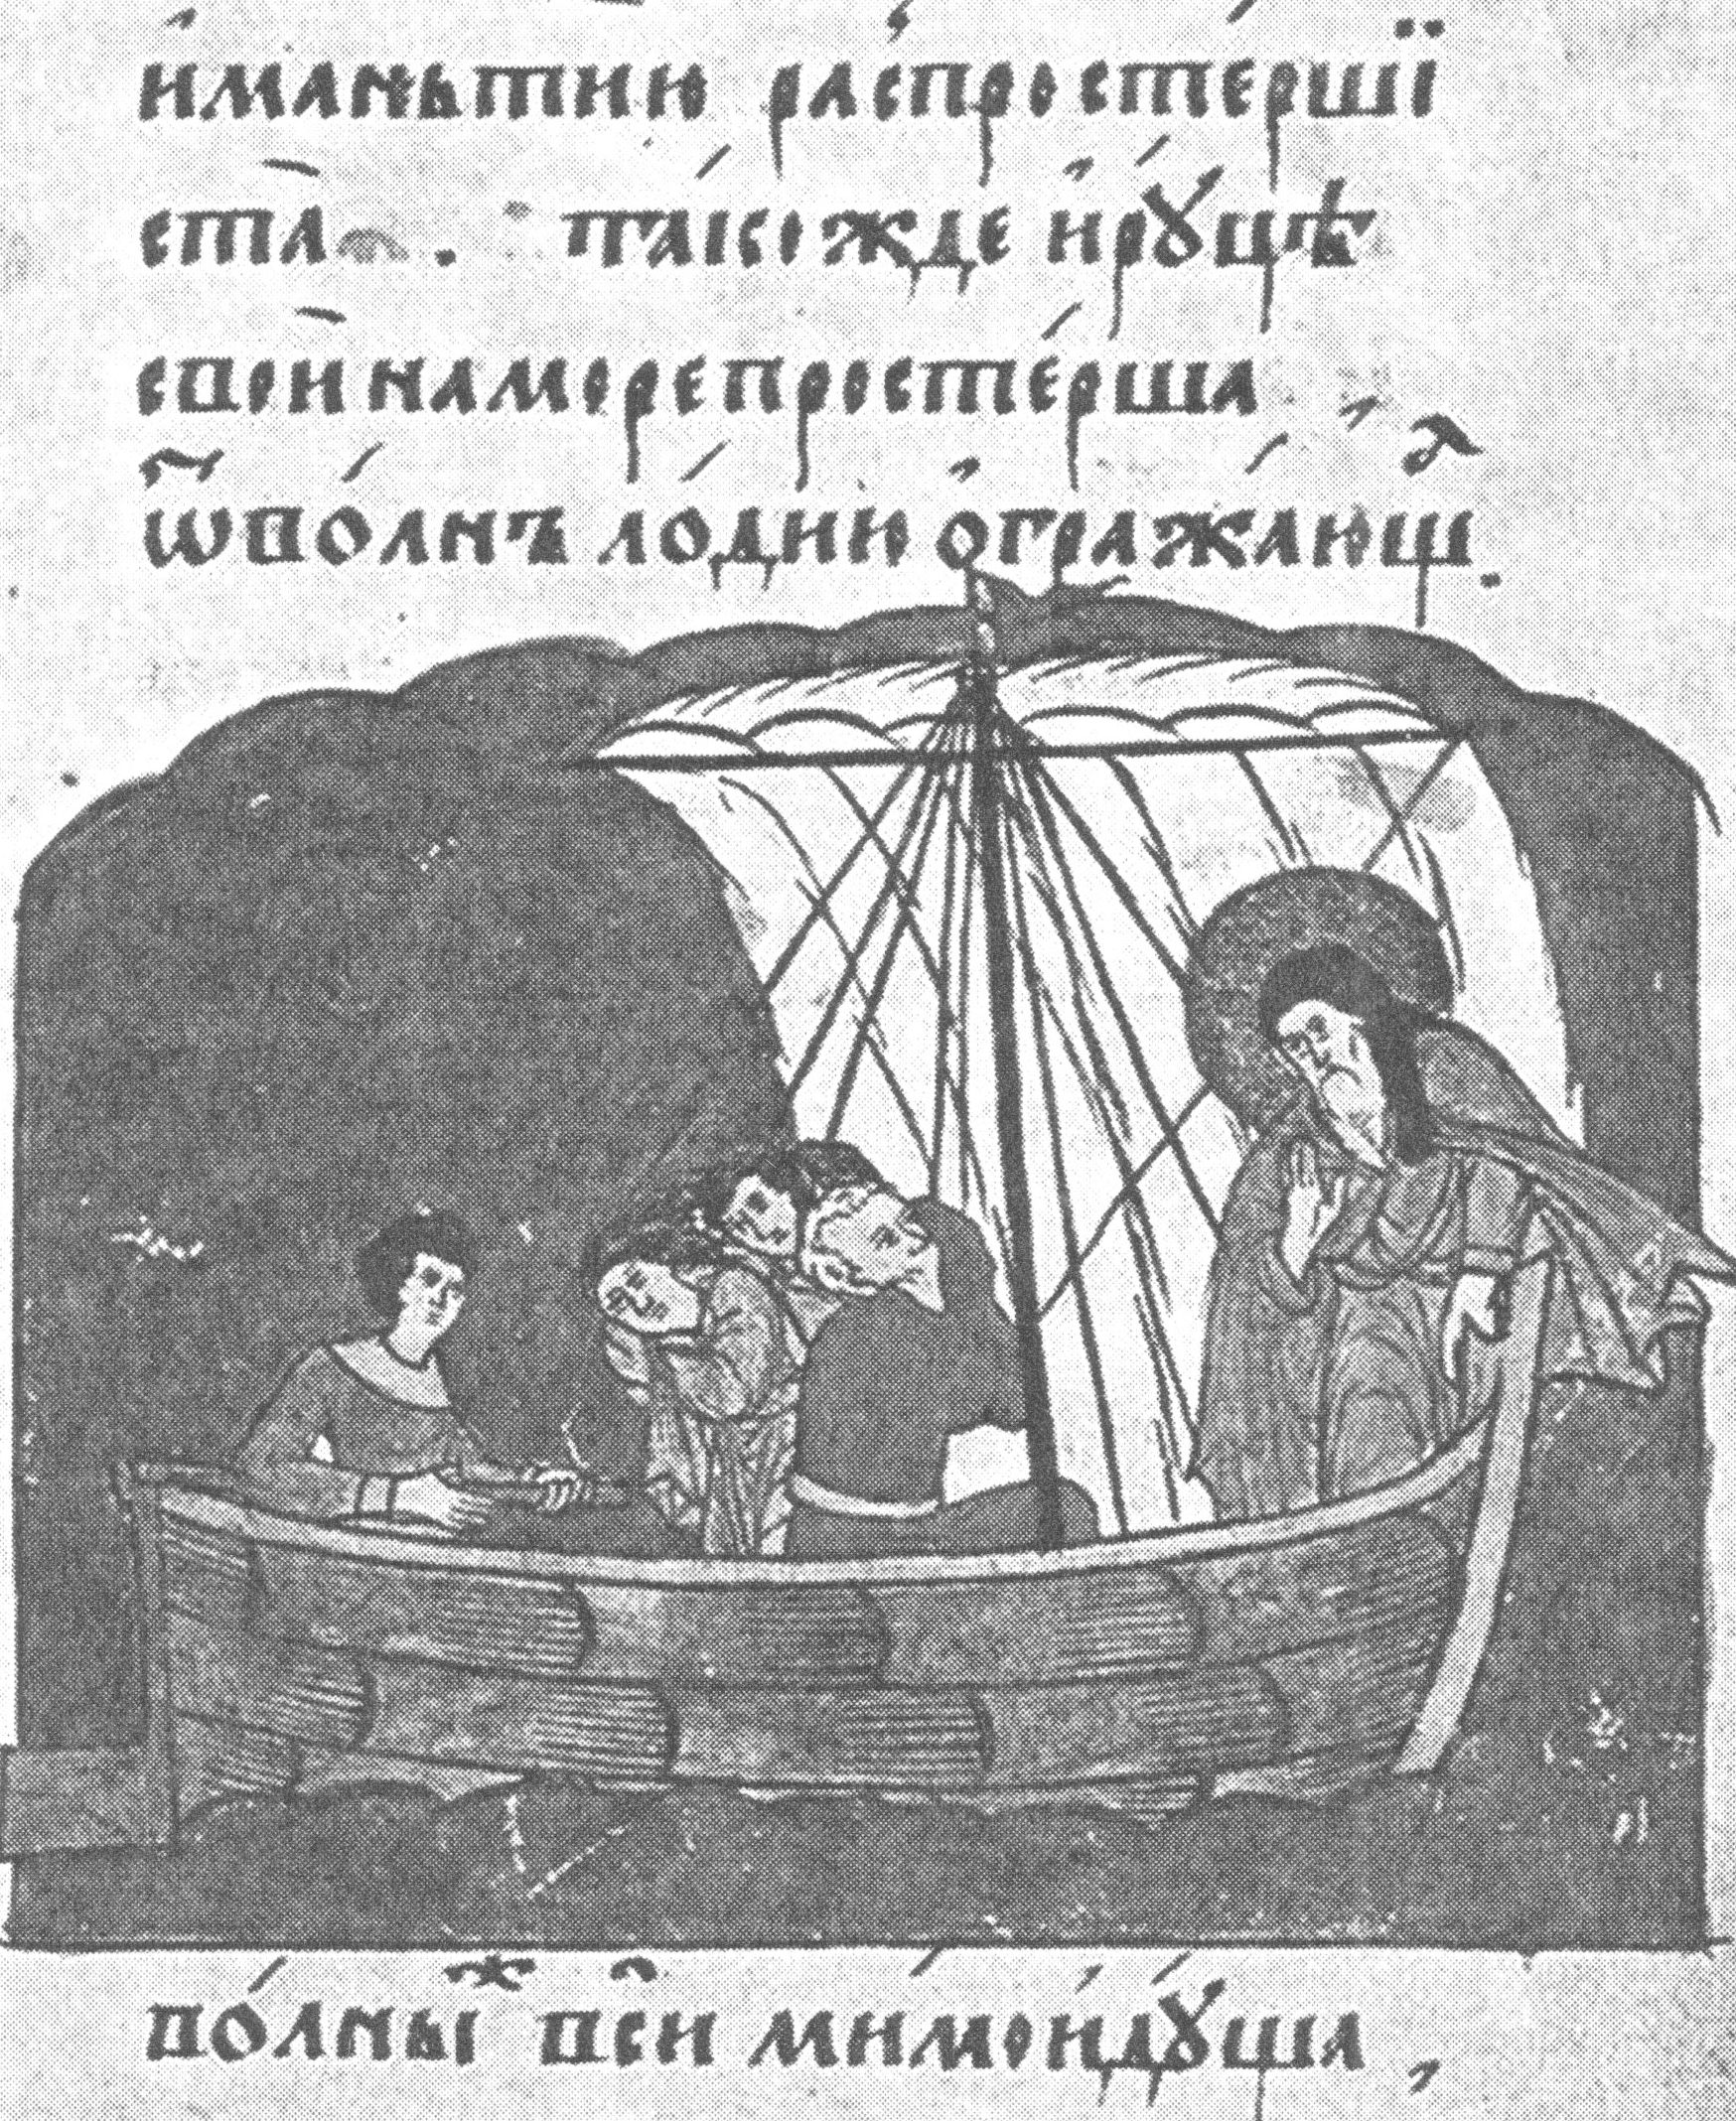 Миниатюра как источник информации о русской судостроительной культуре XV–XVII веков